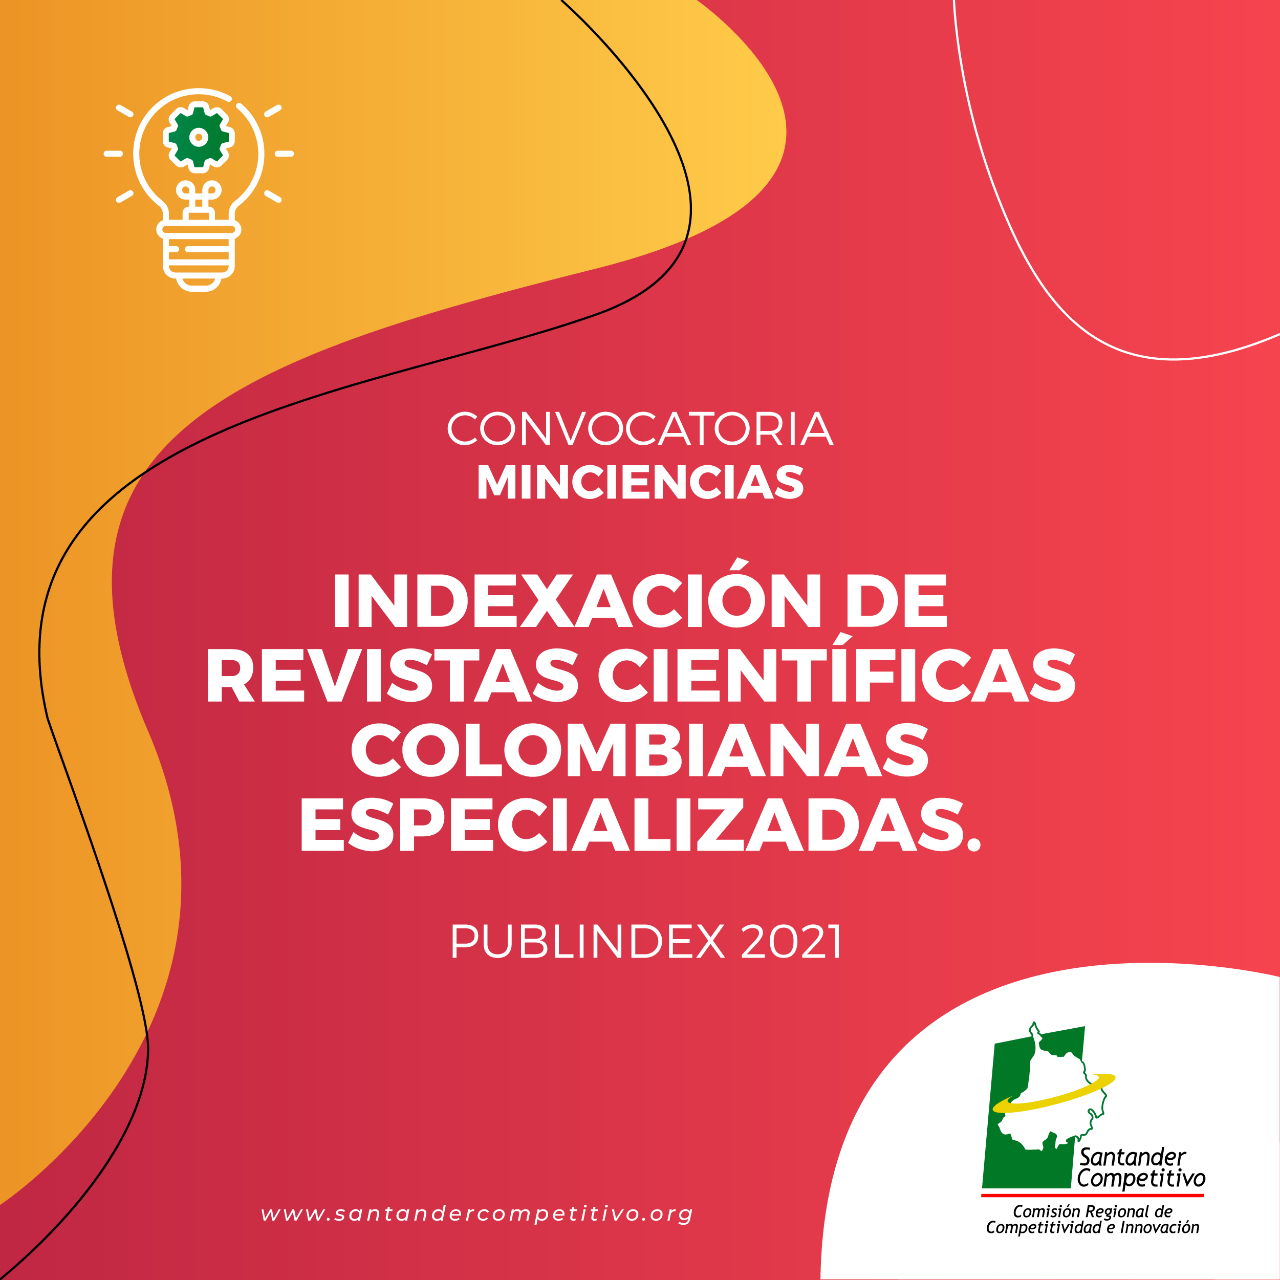 Indexación de revistas científicas colombianas especializadas